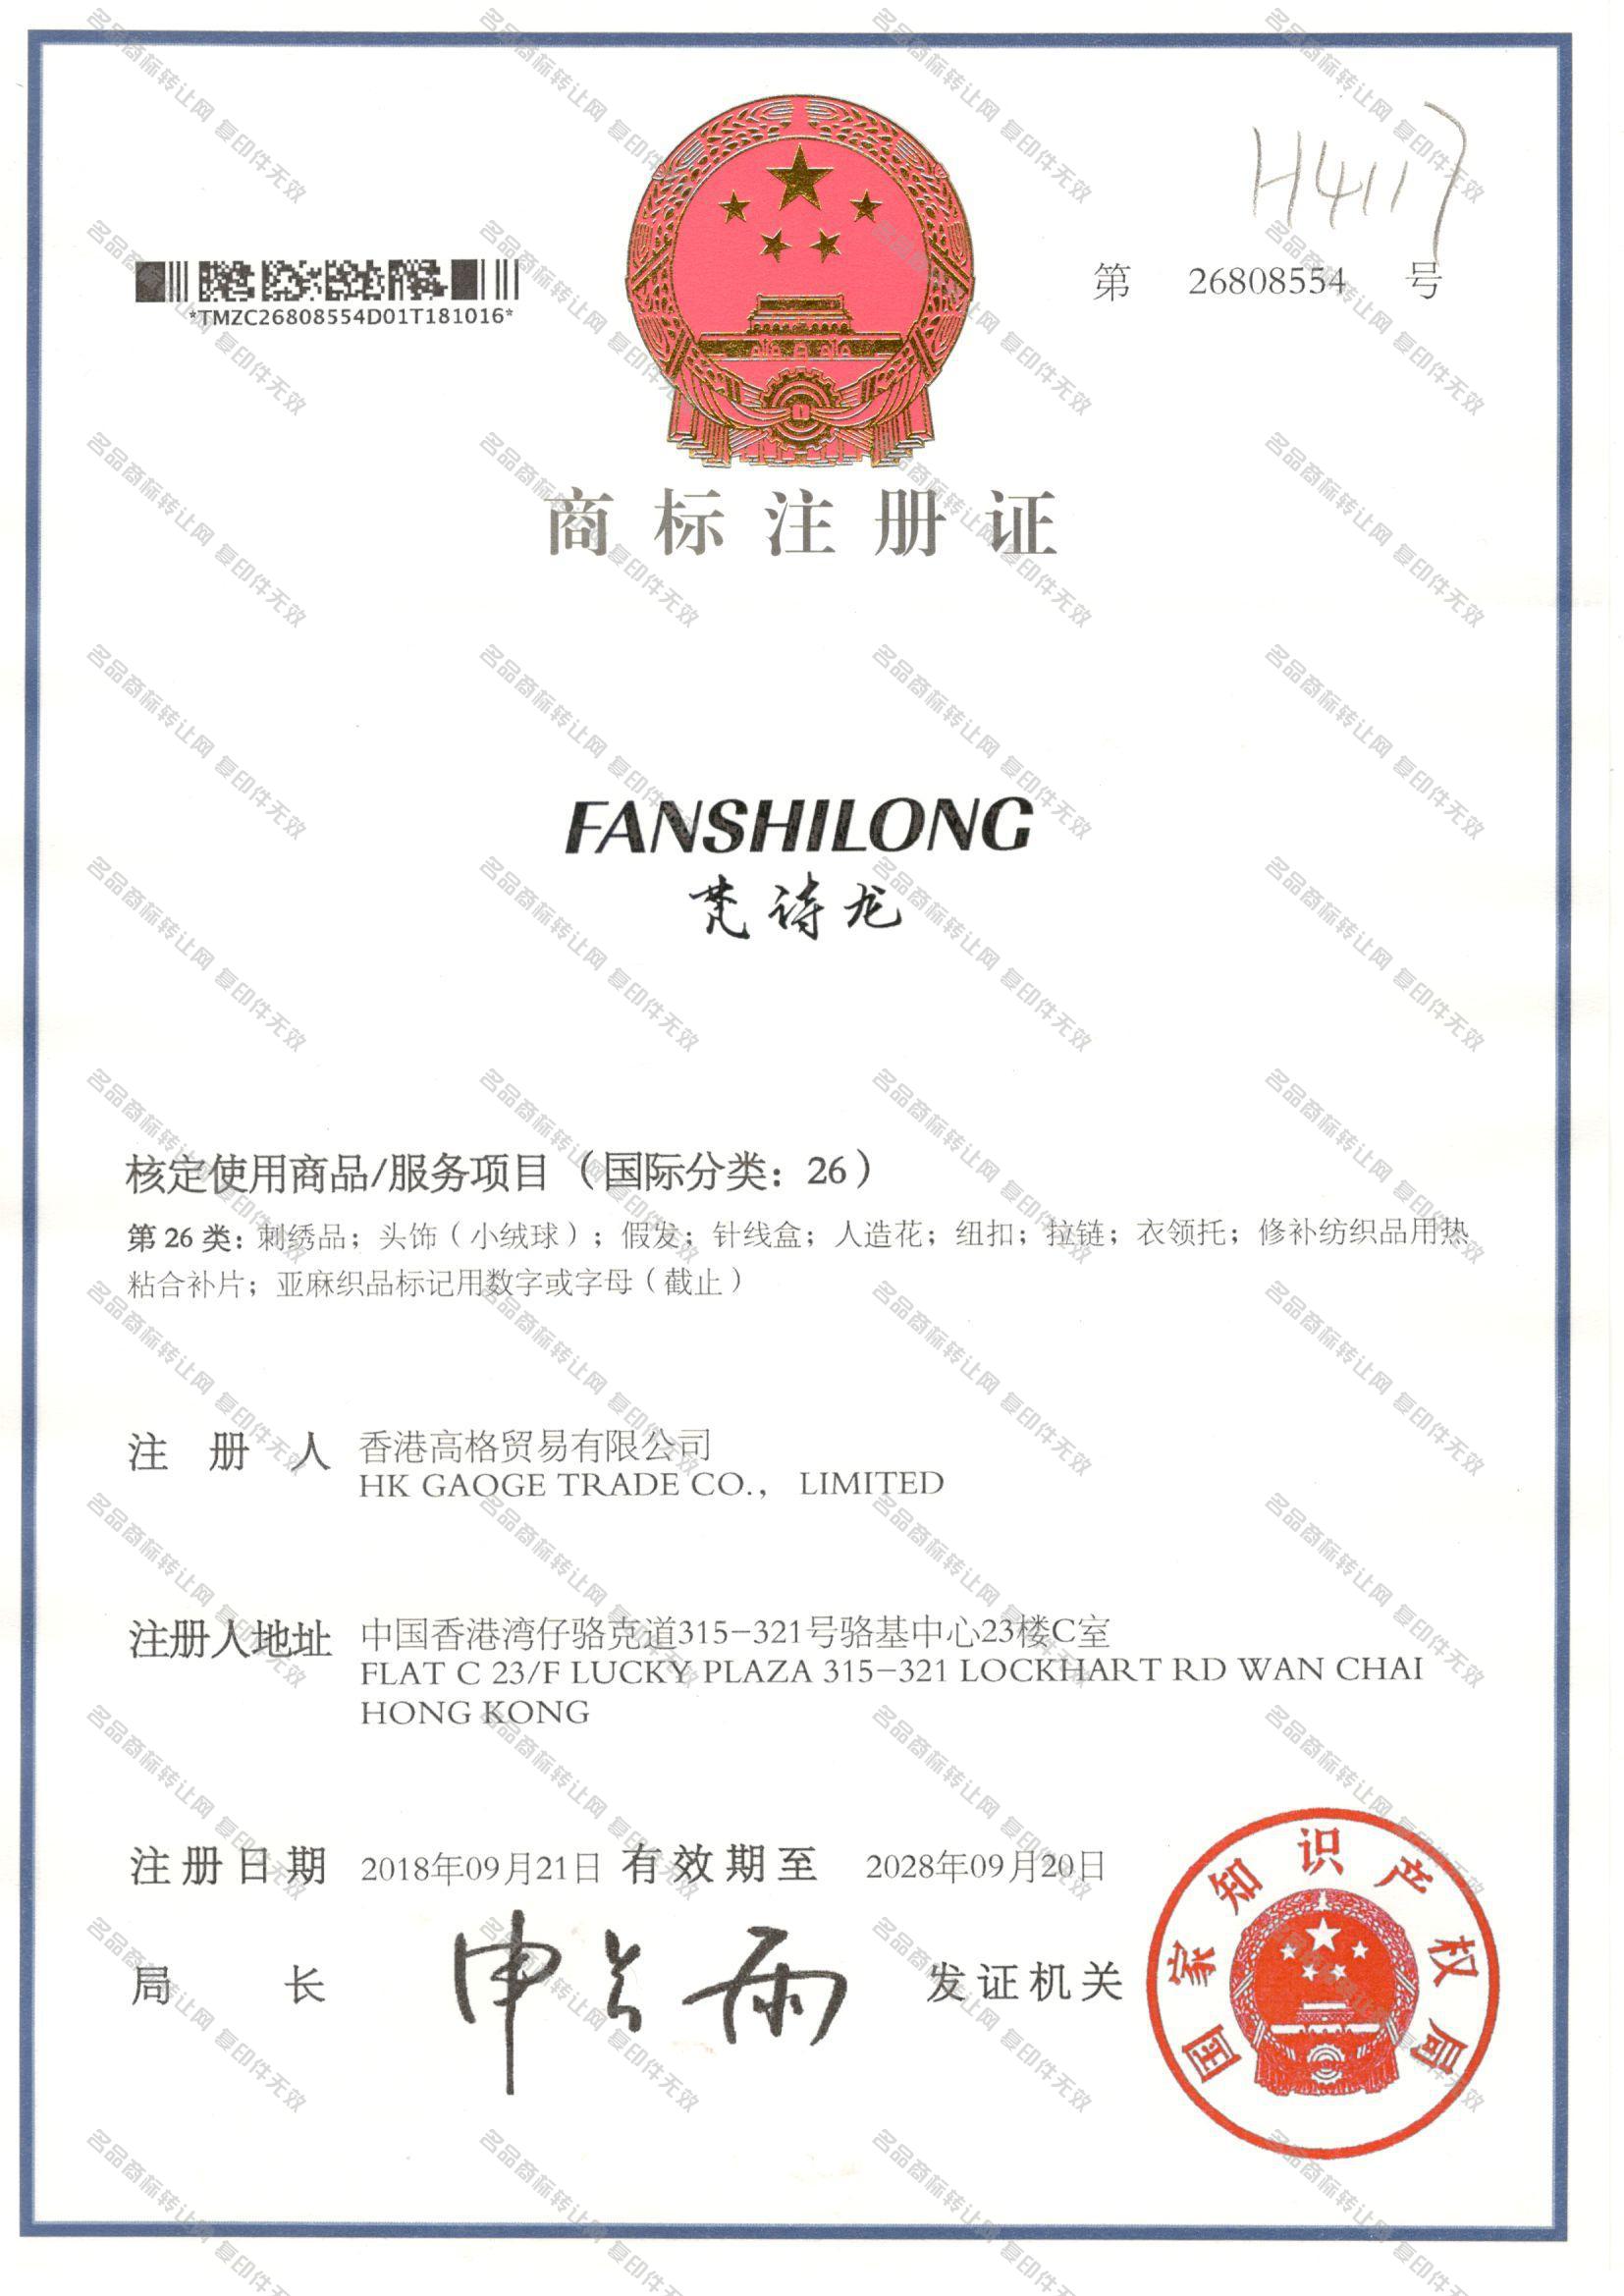 梵诗龙 FANSHILONG注册证